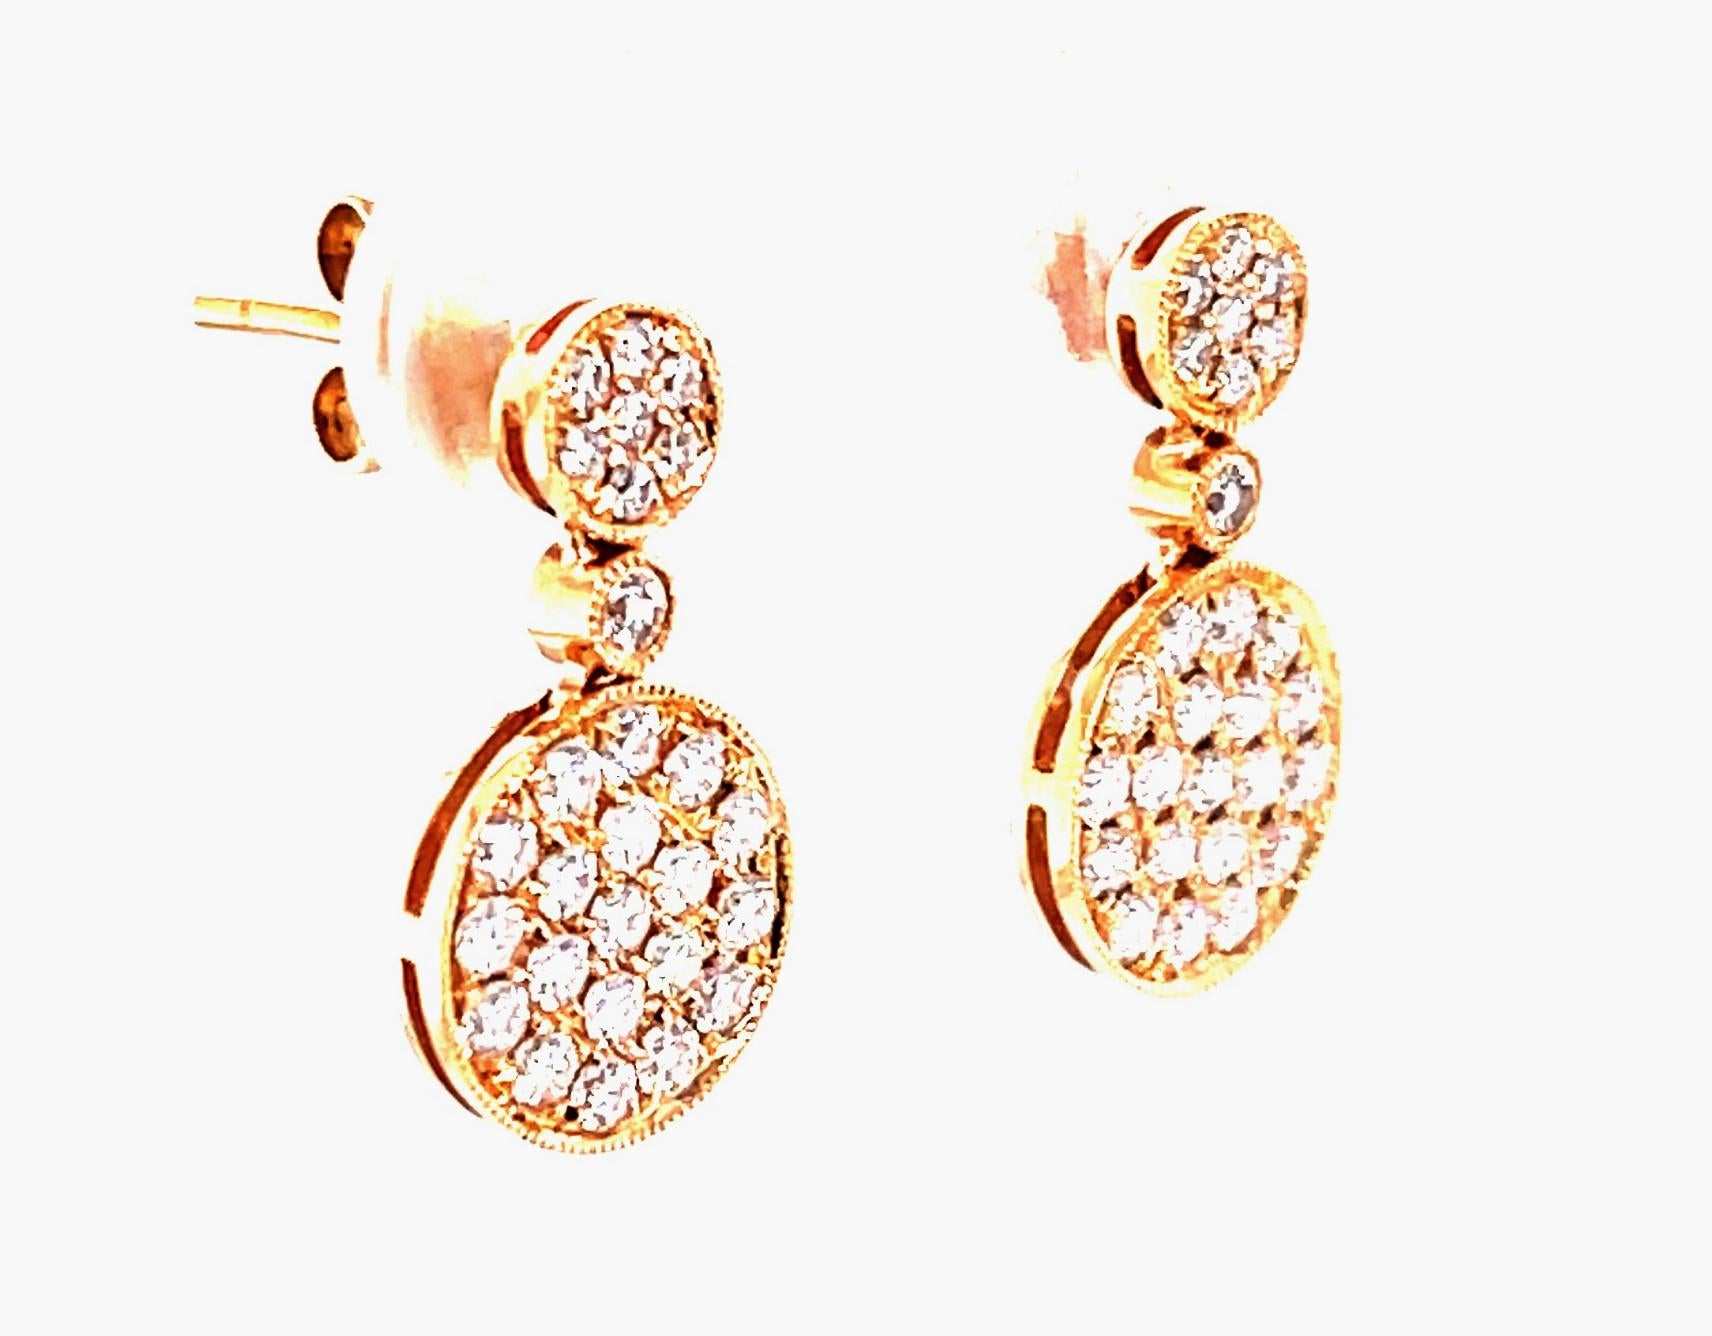 Modernes mais classiques, ces boucles d'oreilles uniques en or rose 18 carats et diamants sont extrêmement polyvalentes !  Des disques de diamants pavés étincelants sont posés sur le lobe de l'oreille et juste en dessous pour un look élégant et sur